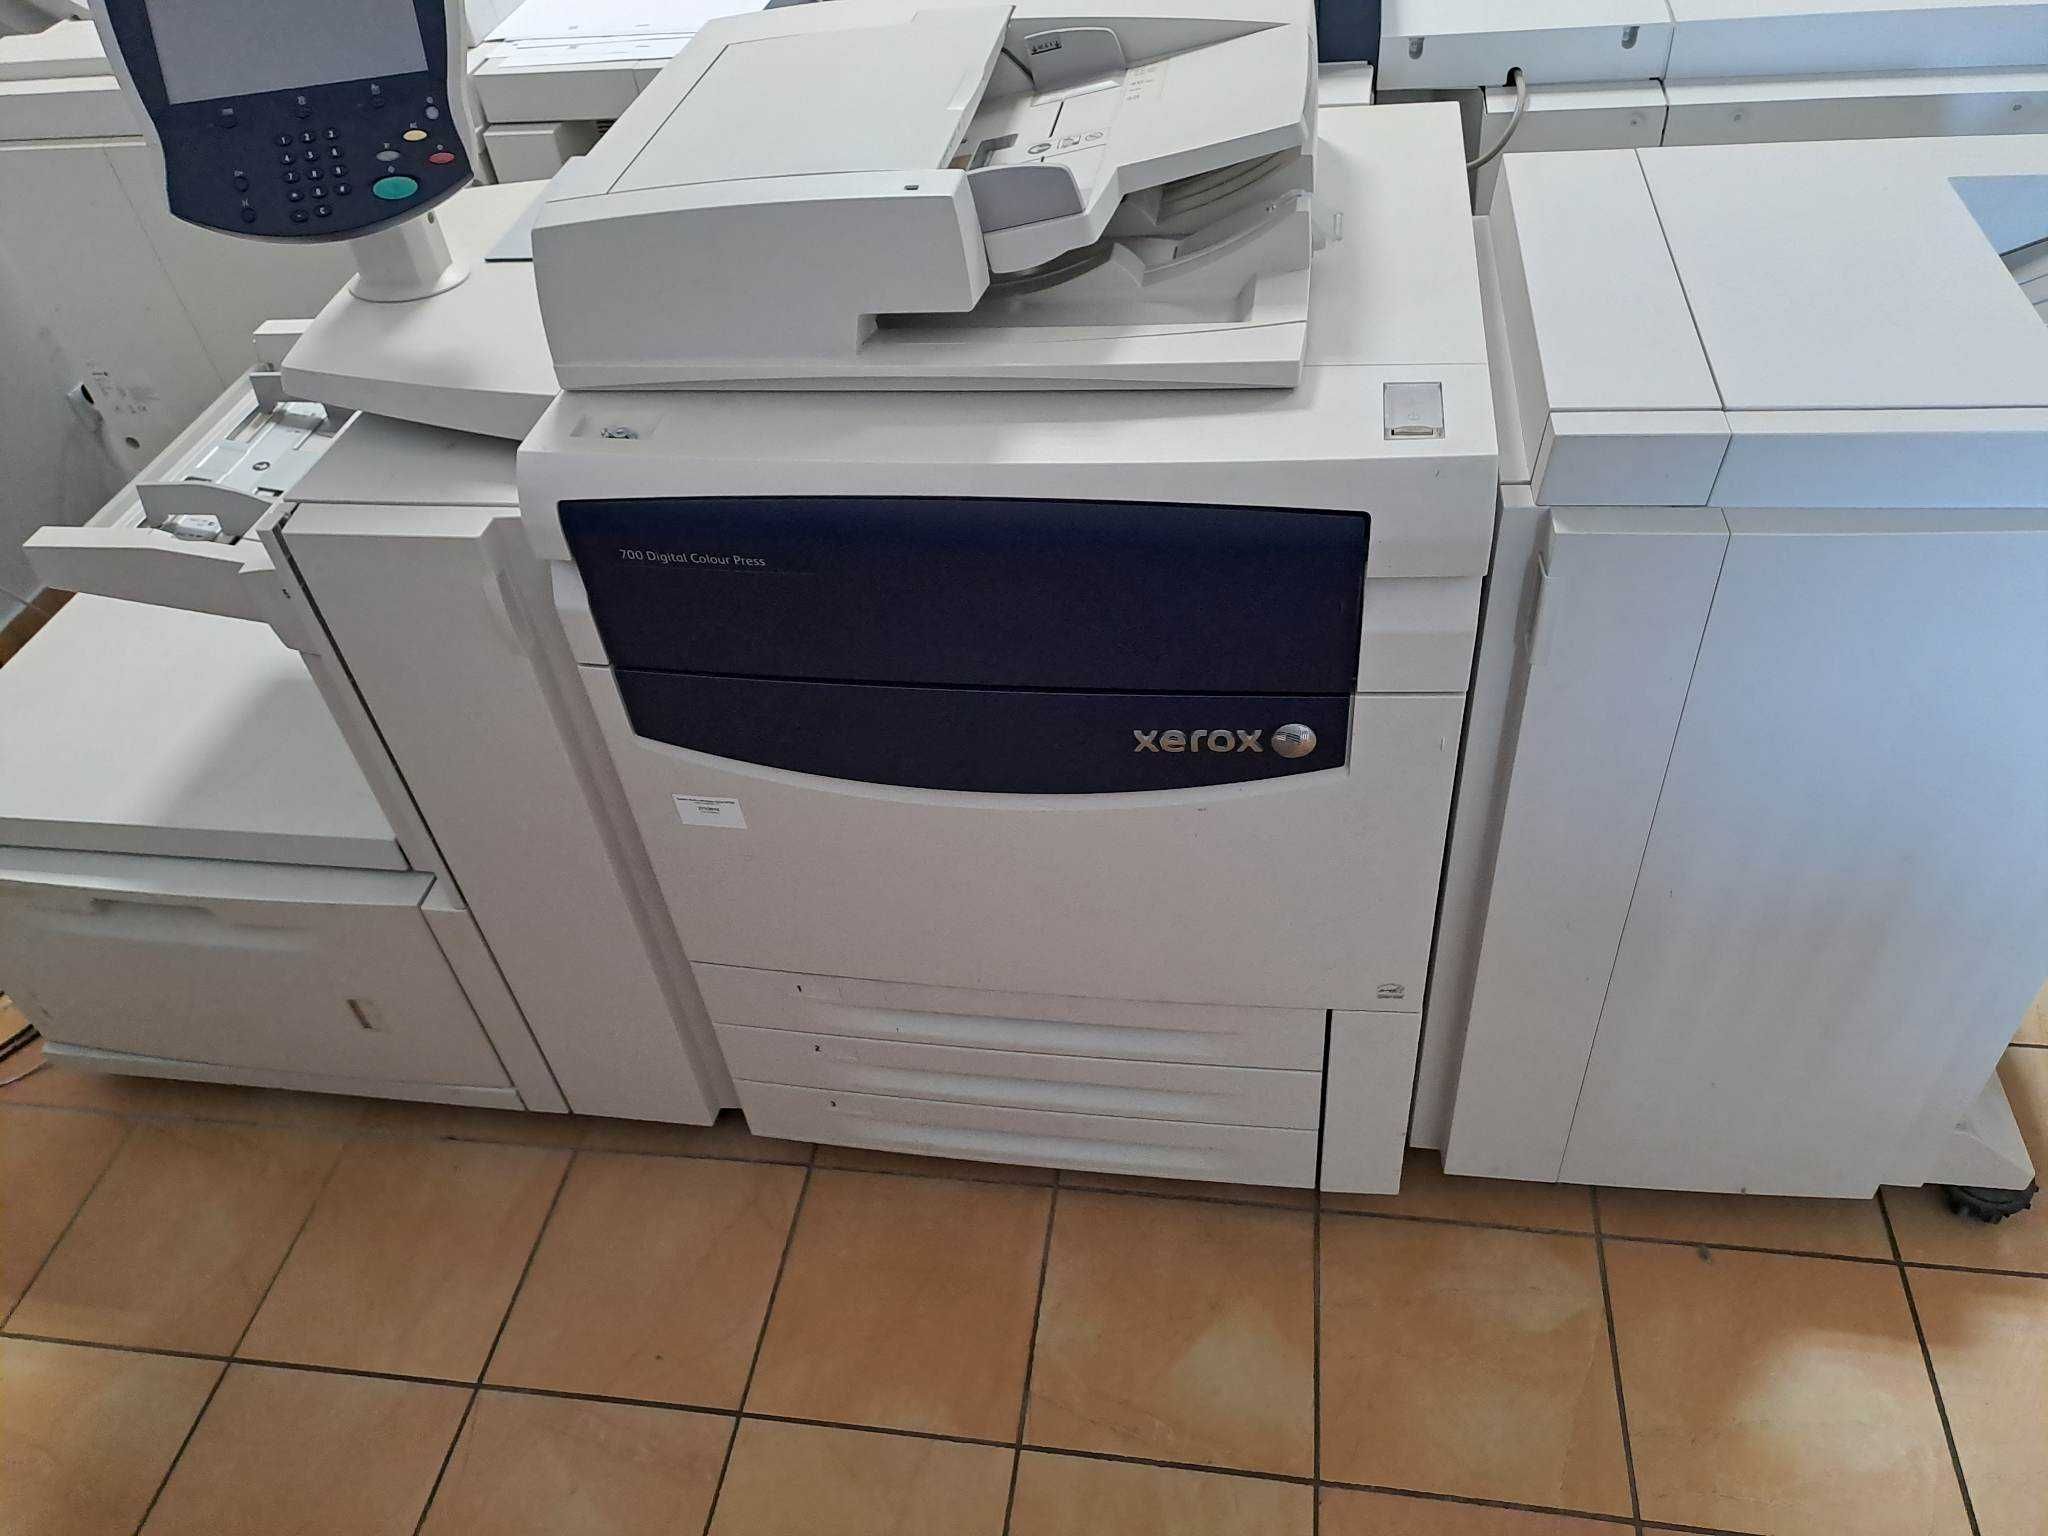 Sprzedam system druku cyfrowego: Xerox 700 Digital Colour Press.